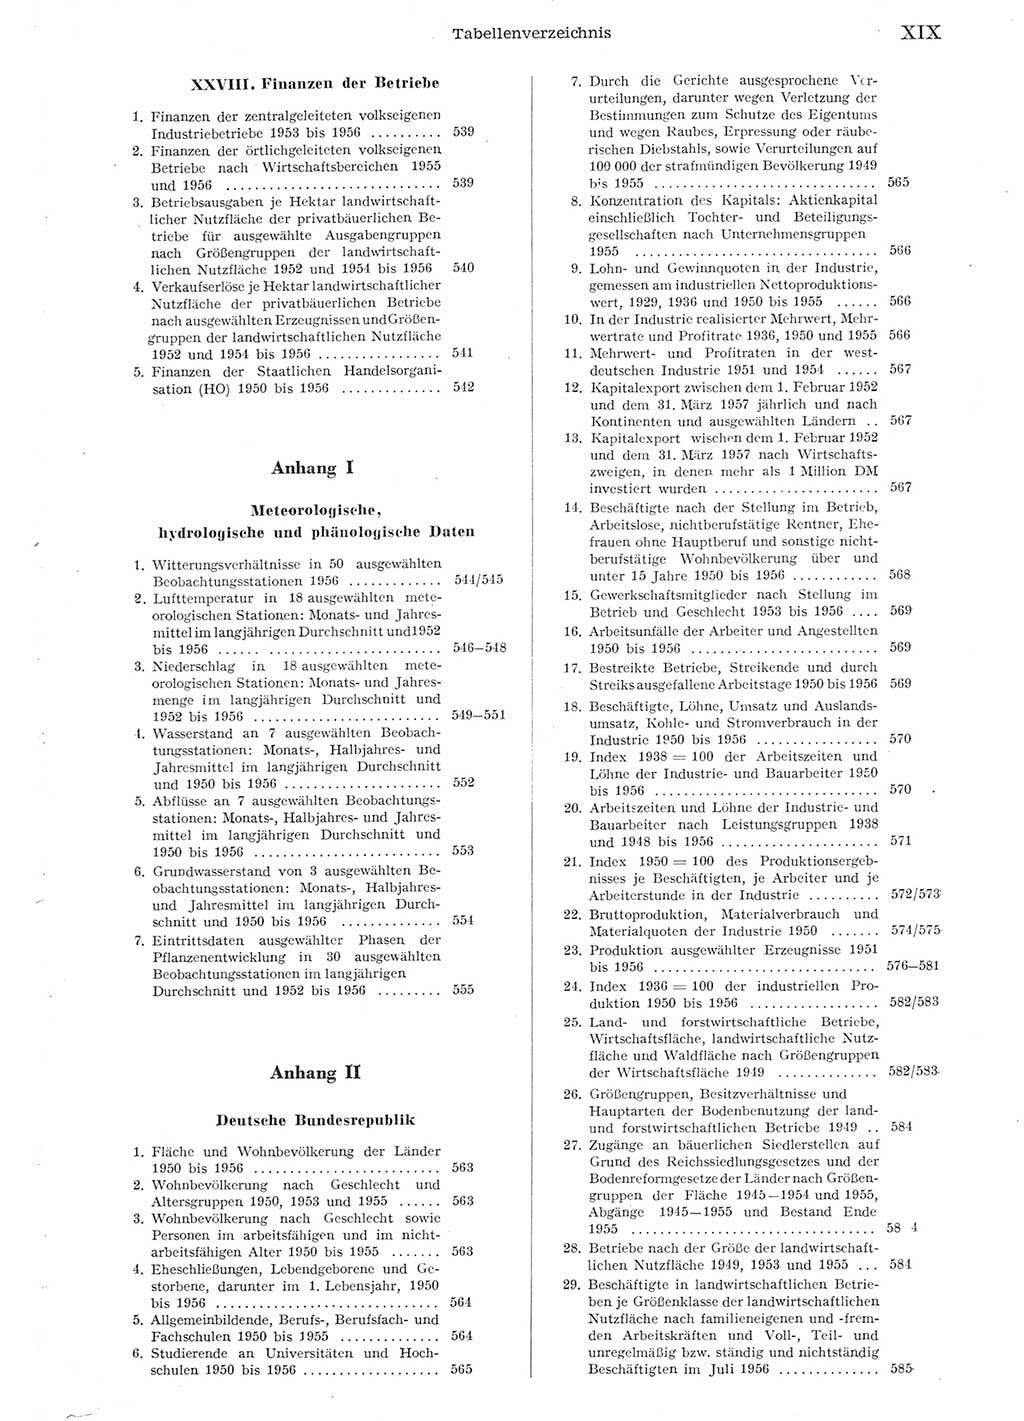 Statistisches Jahrbuch der Deutschen Demokratischen Republik (DDR) 1956, Seite 19 (Stat. Jb. DDR 1956, S. 19)